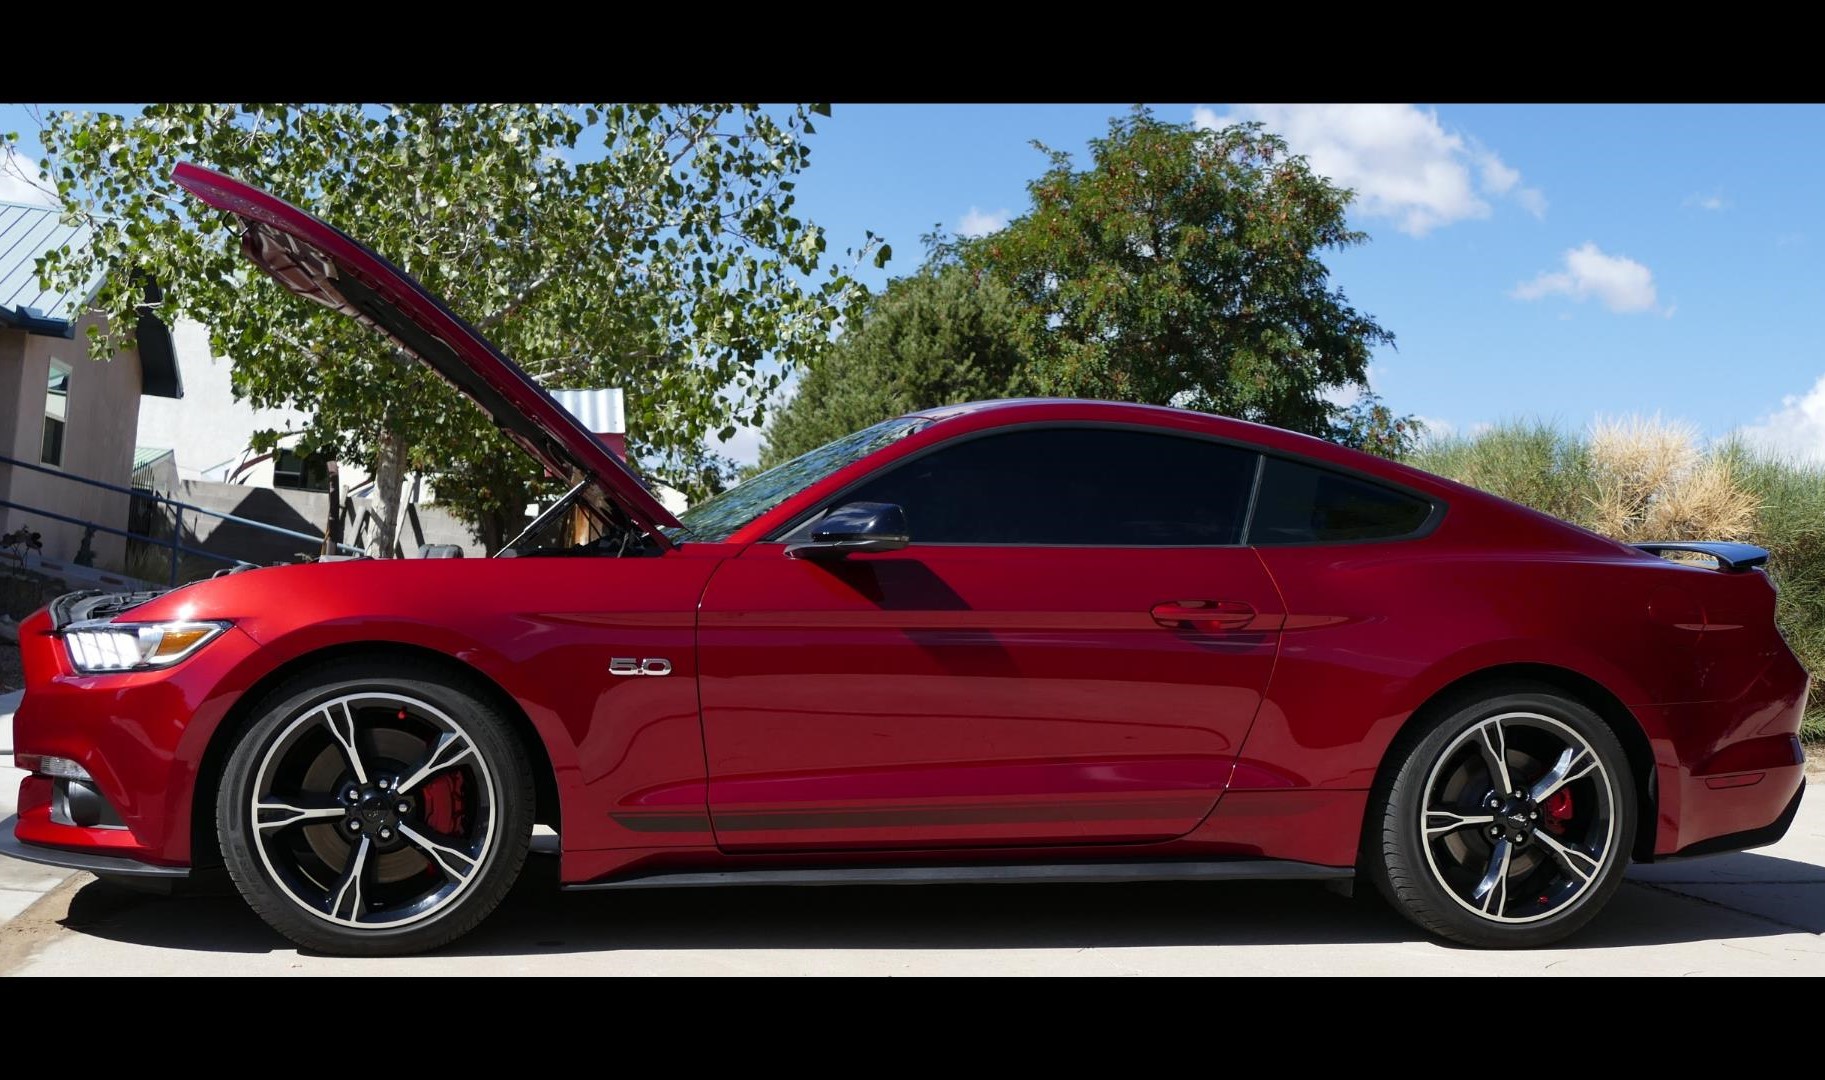 Red caliper paint | 2015+ S550 Mustang Forum EcoBoost, GT350, GT500, Bullitt, Mach 1) - Mustang6G.com